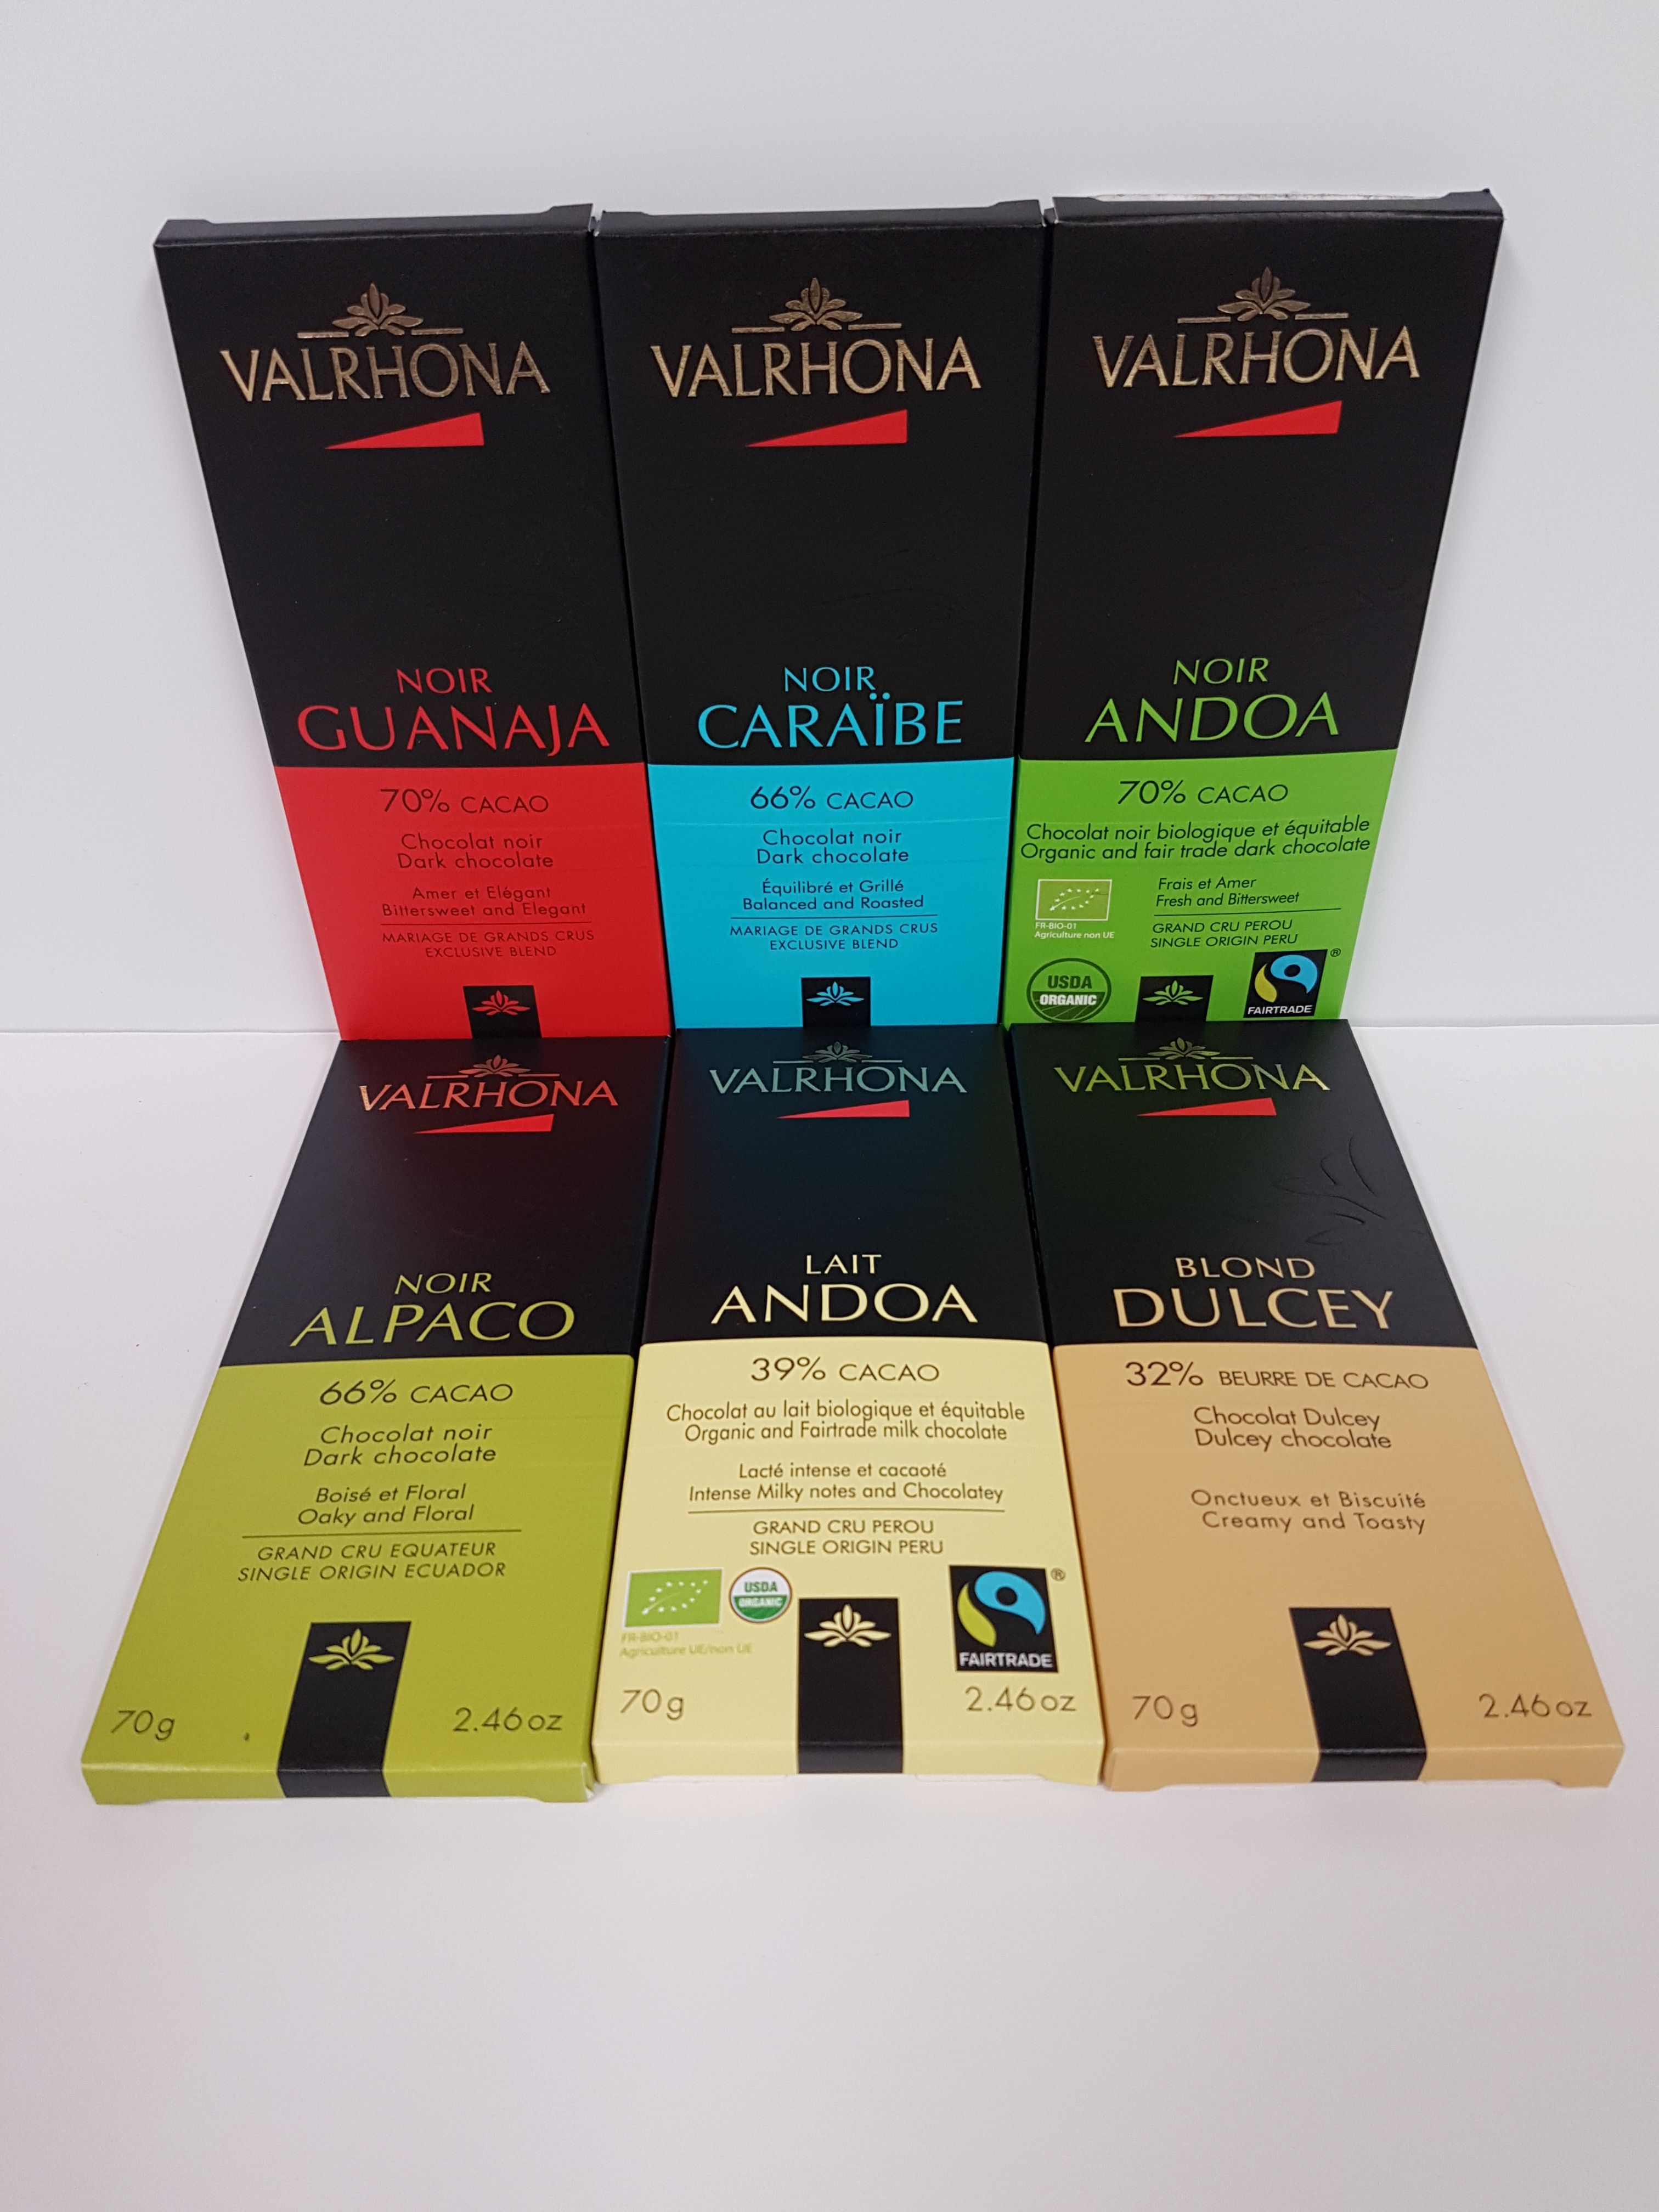 Tablette de chocolat Valrhona Blond Dulcey 32% de beurre de cacao